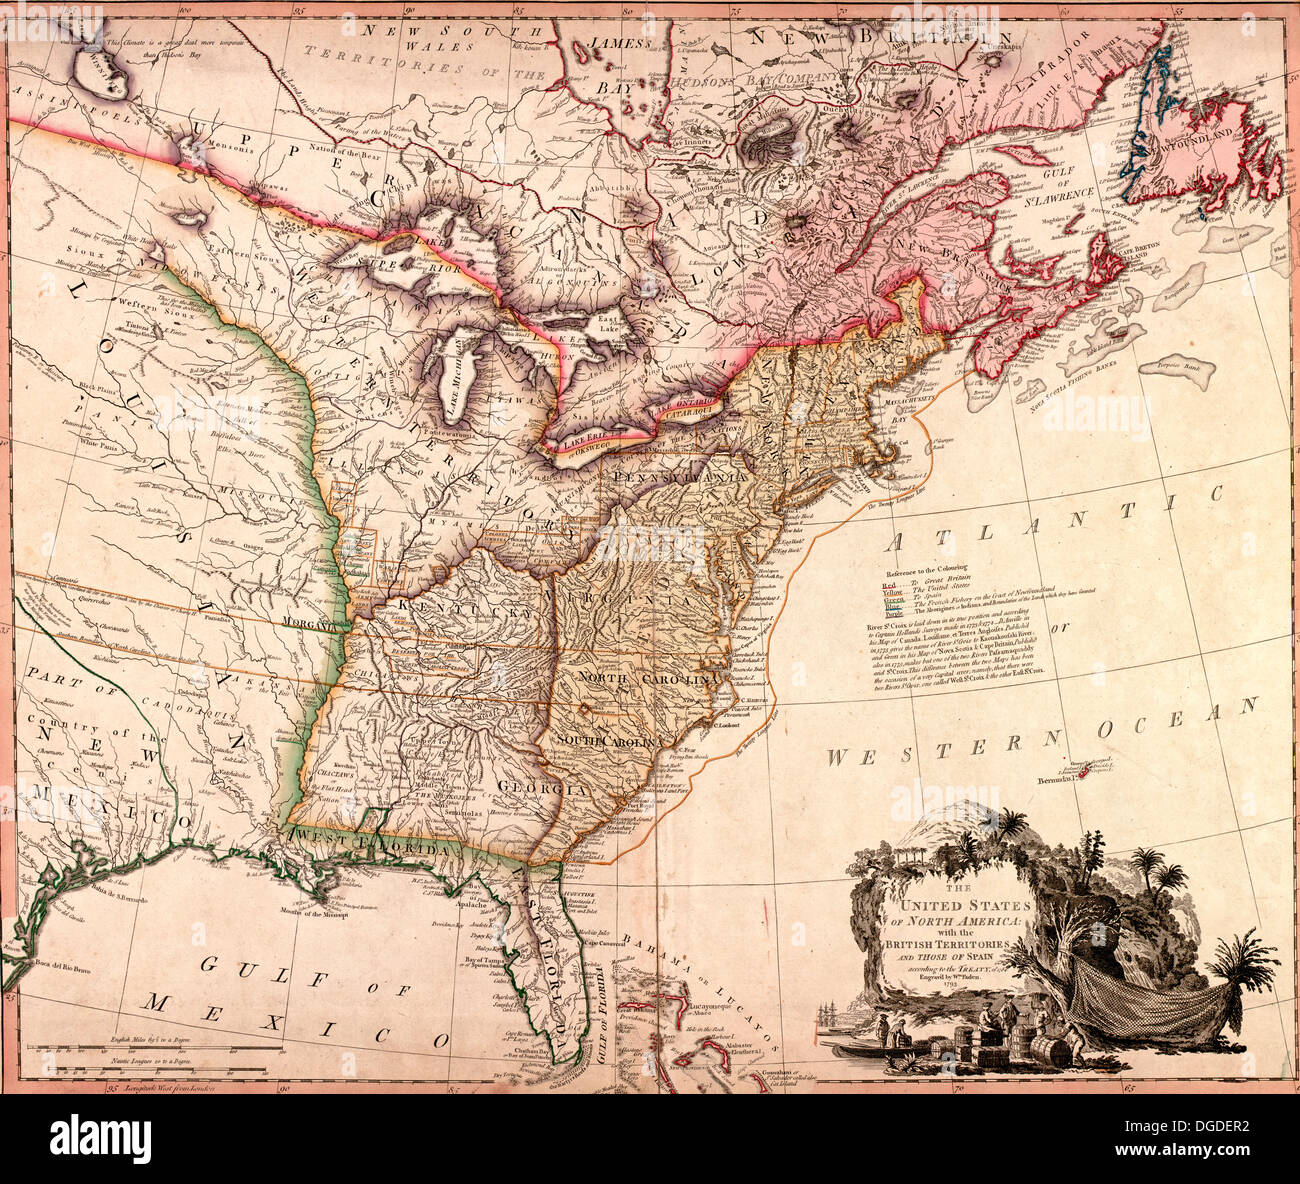 Les États-Unis d'Amérique du Nord, avec les territoires britanniques. 1793 Banque D'Images